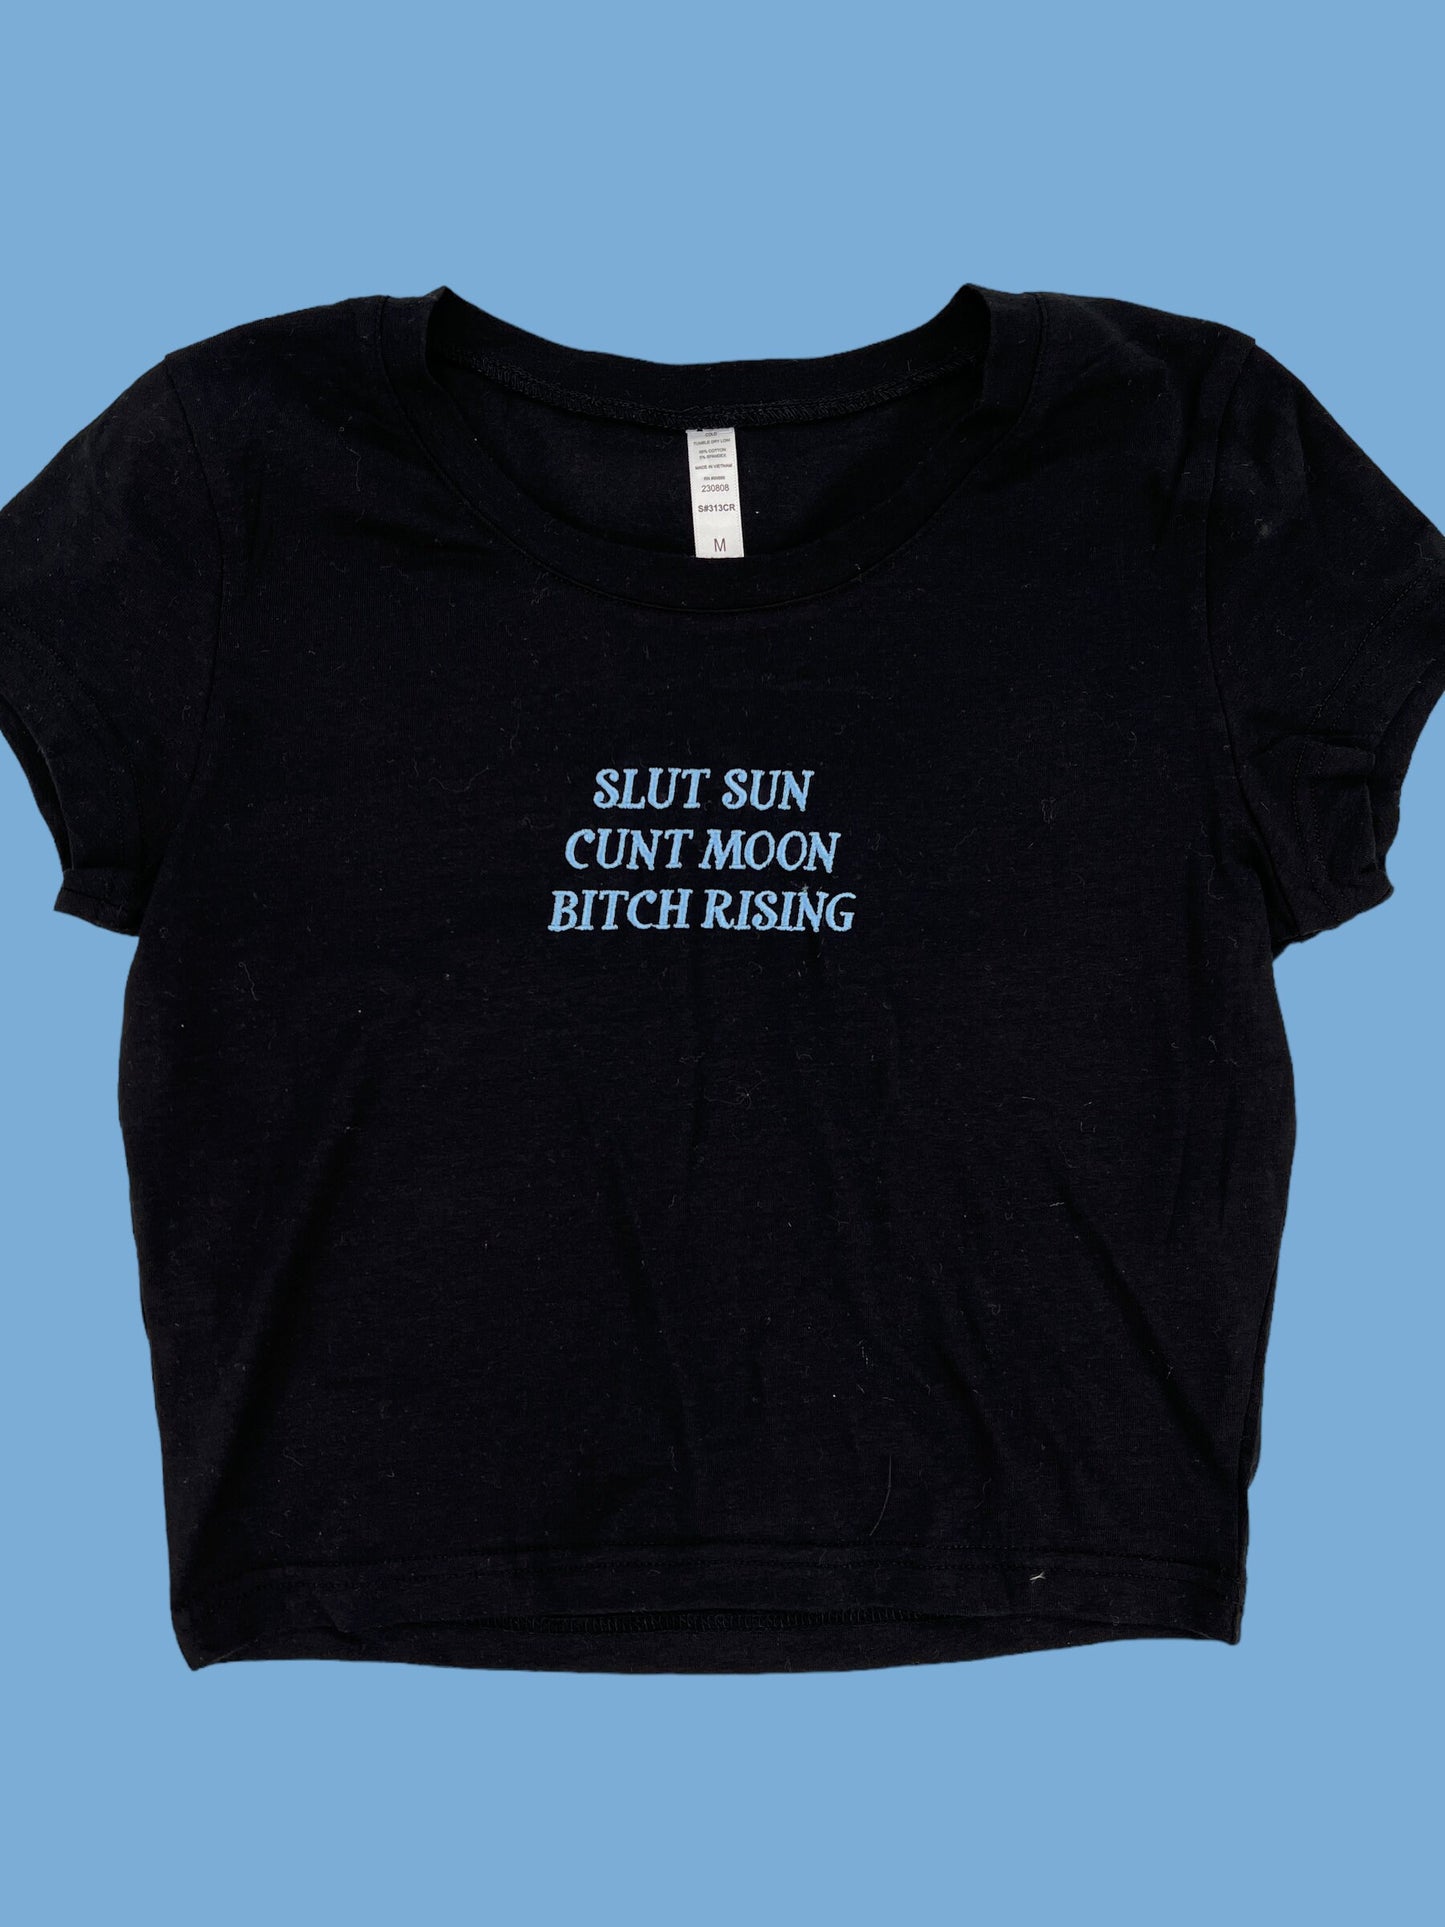 a black t - shirt that says slut sun, cunt moon, bitch